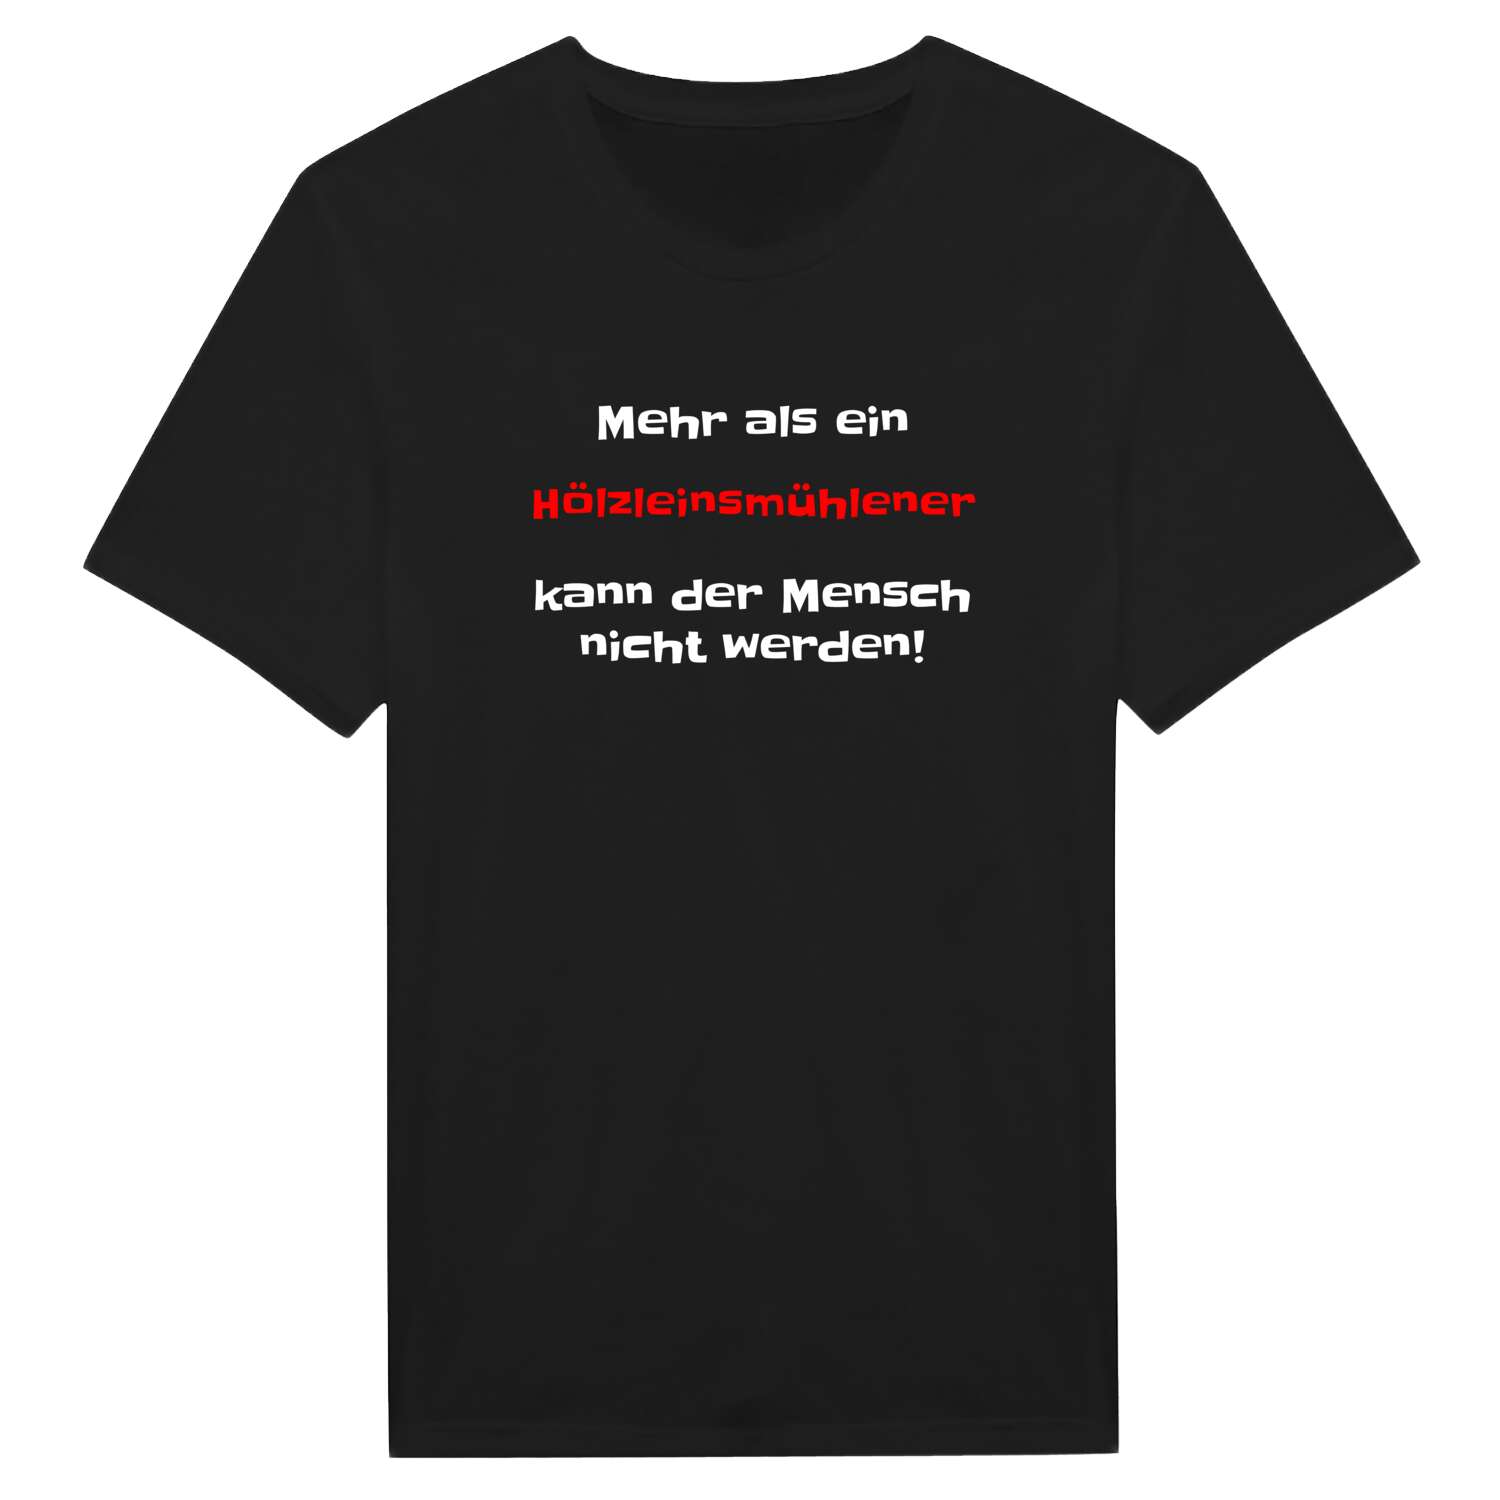 Hölzleinsmühle T-Shirt »Mehr als ein«